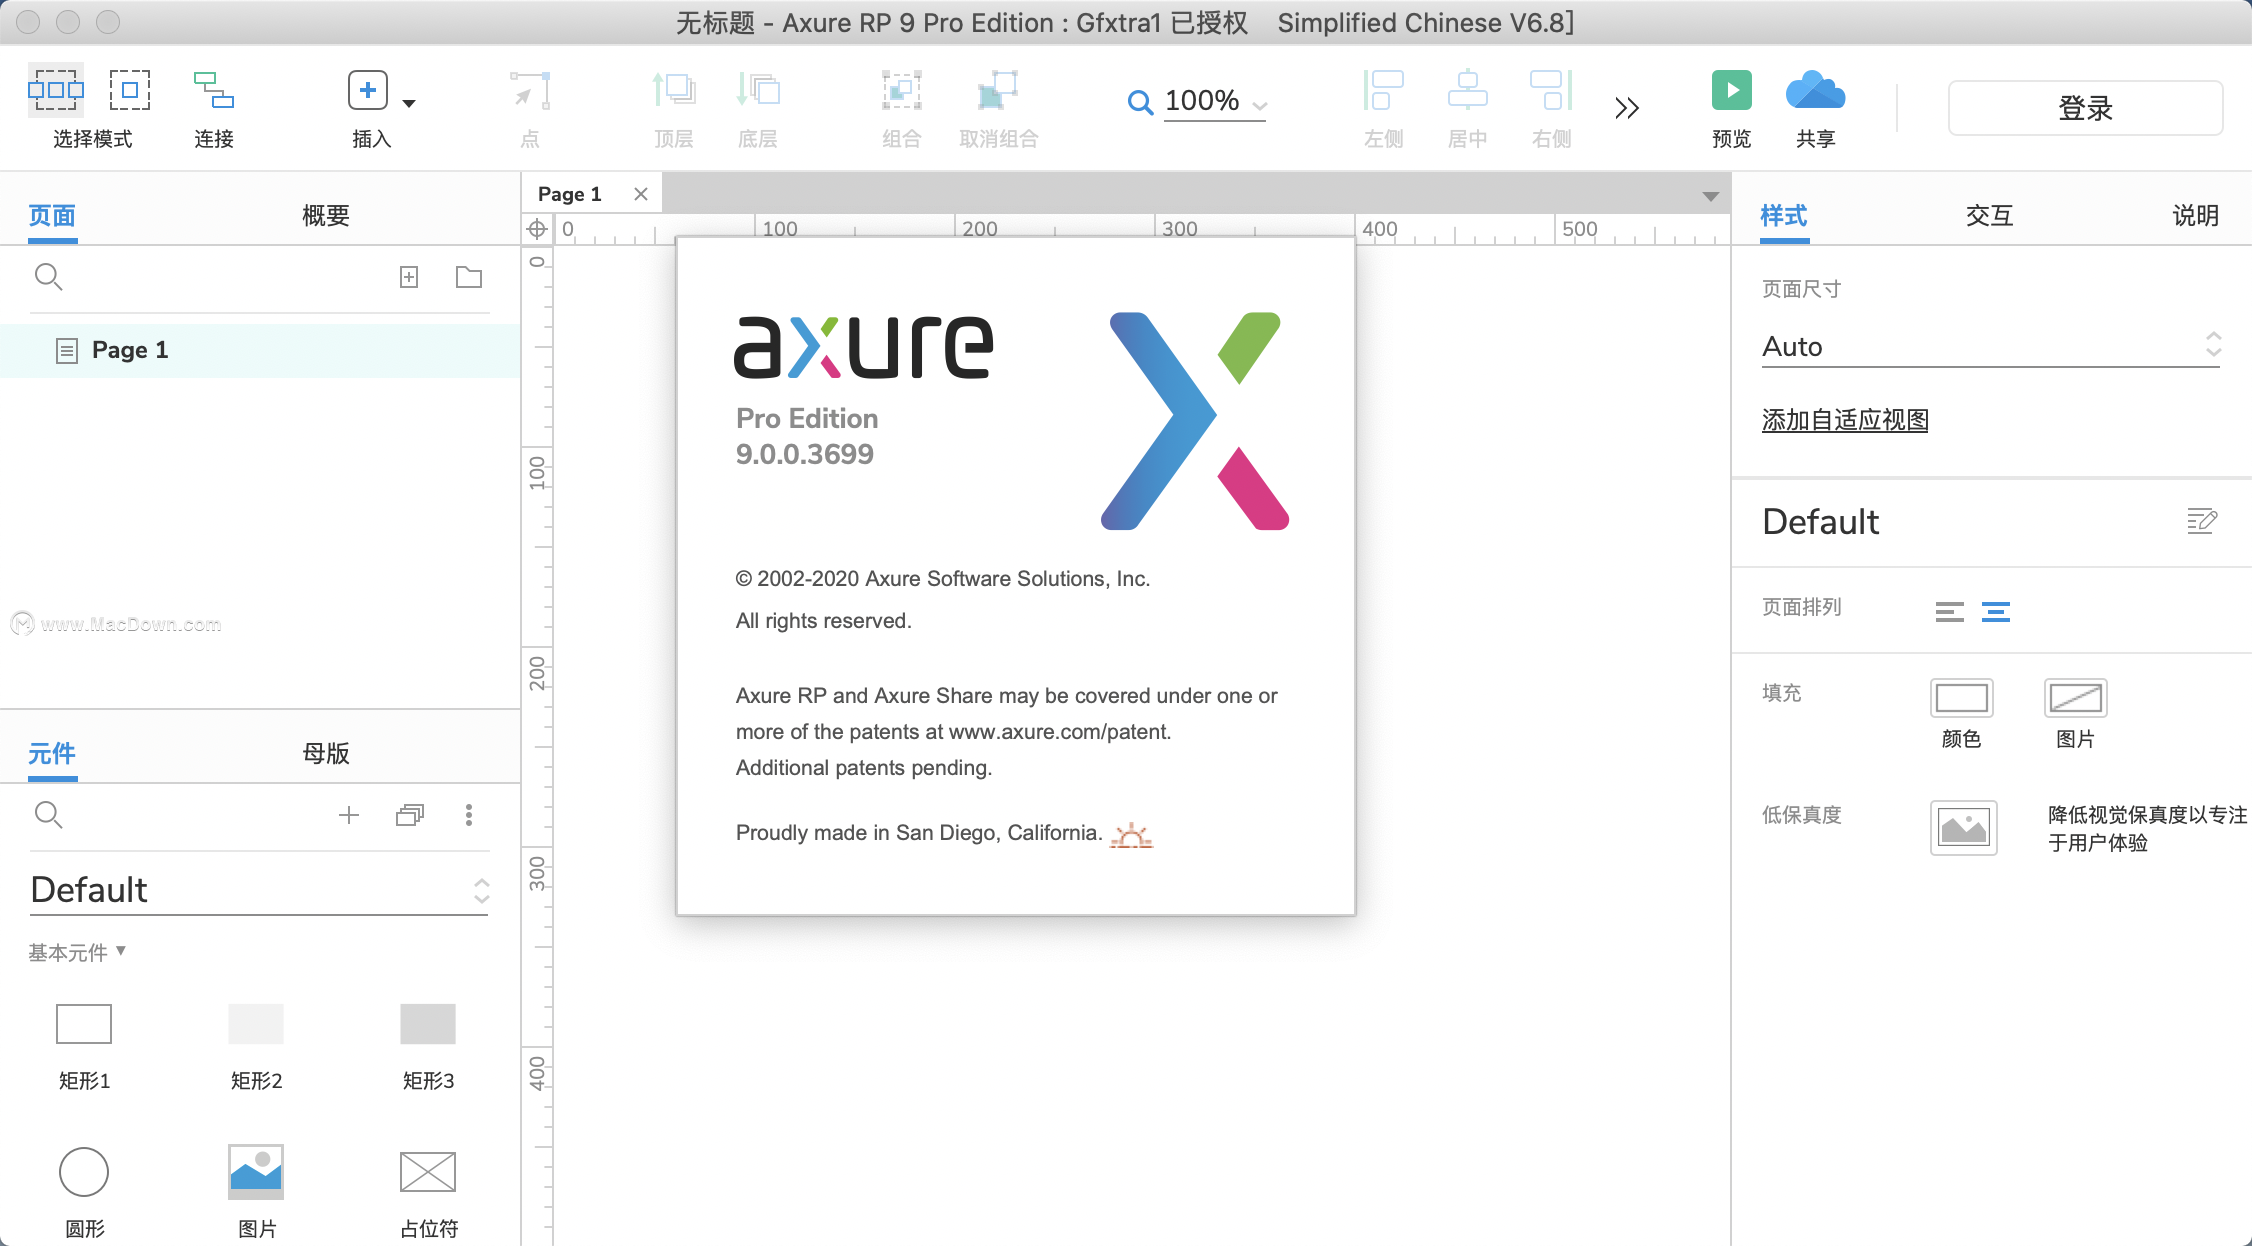 Axure RP 9 for Mac软件有哪些特征